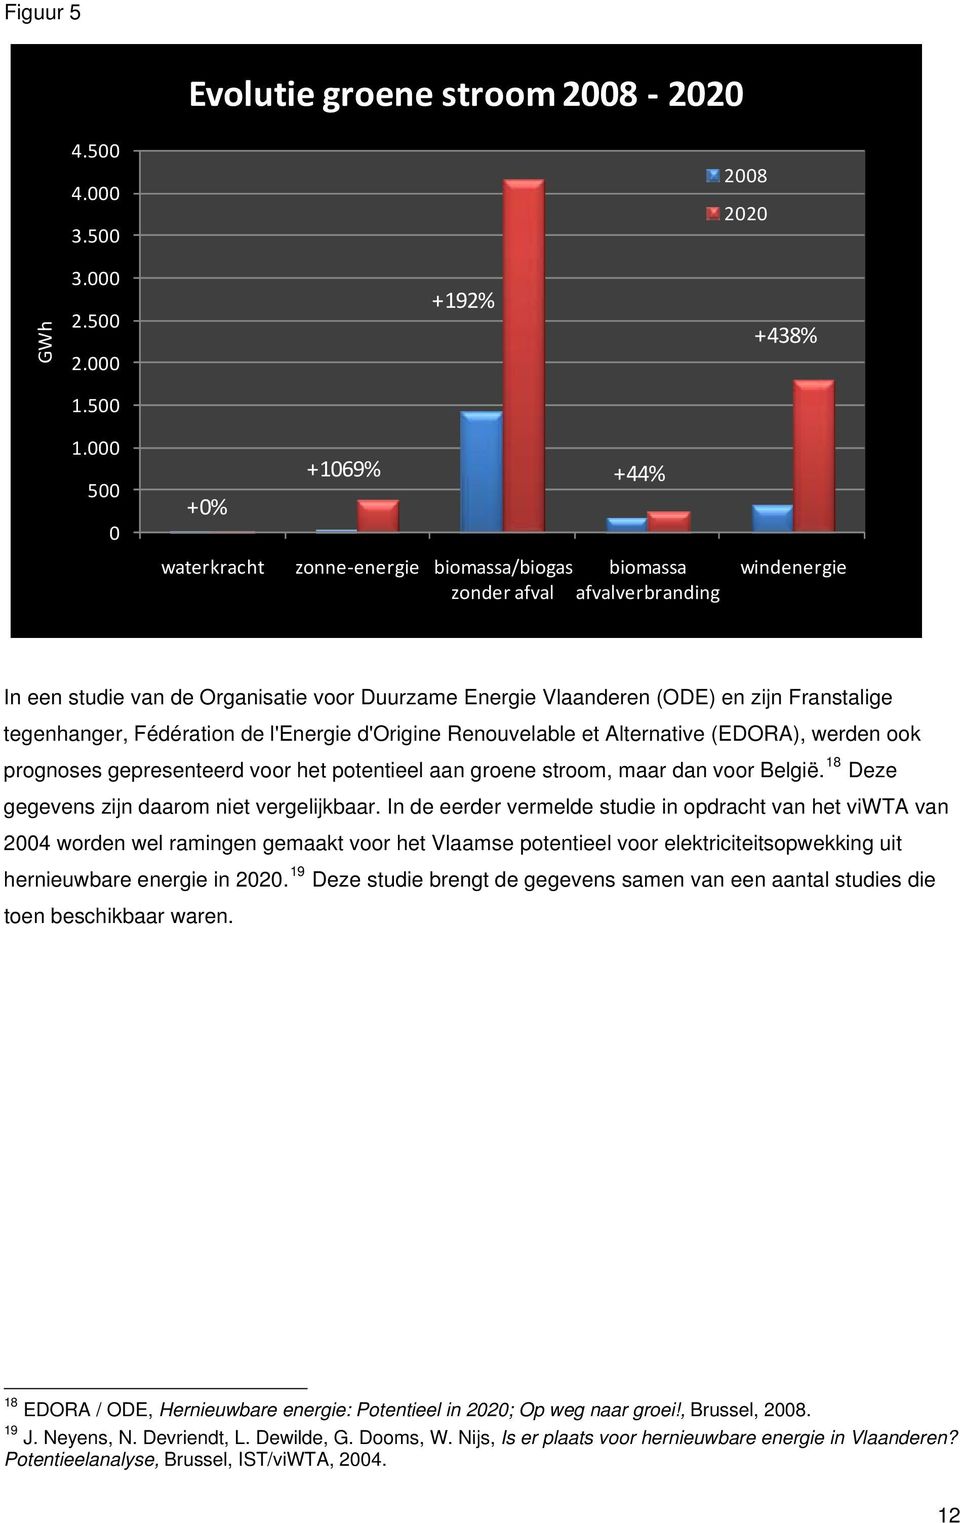 Franstalige tegenhanger, Fédération de l'energie d'origine Renouvelable et Alternative (EDORA), werden ook prognoses gepresenteerd voor het potentieel aan groene stroom, maar dan voor België.